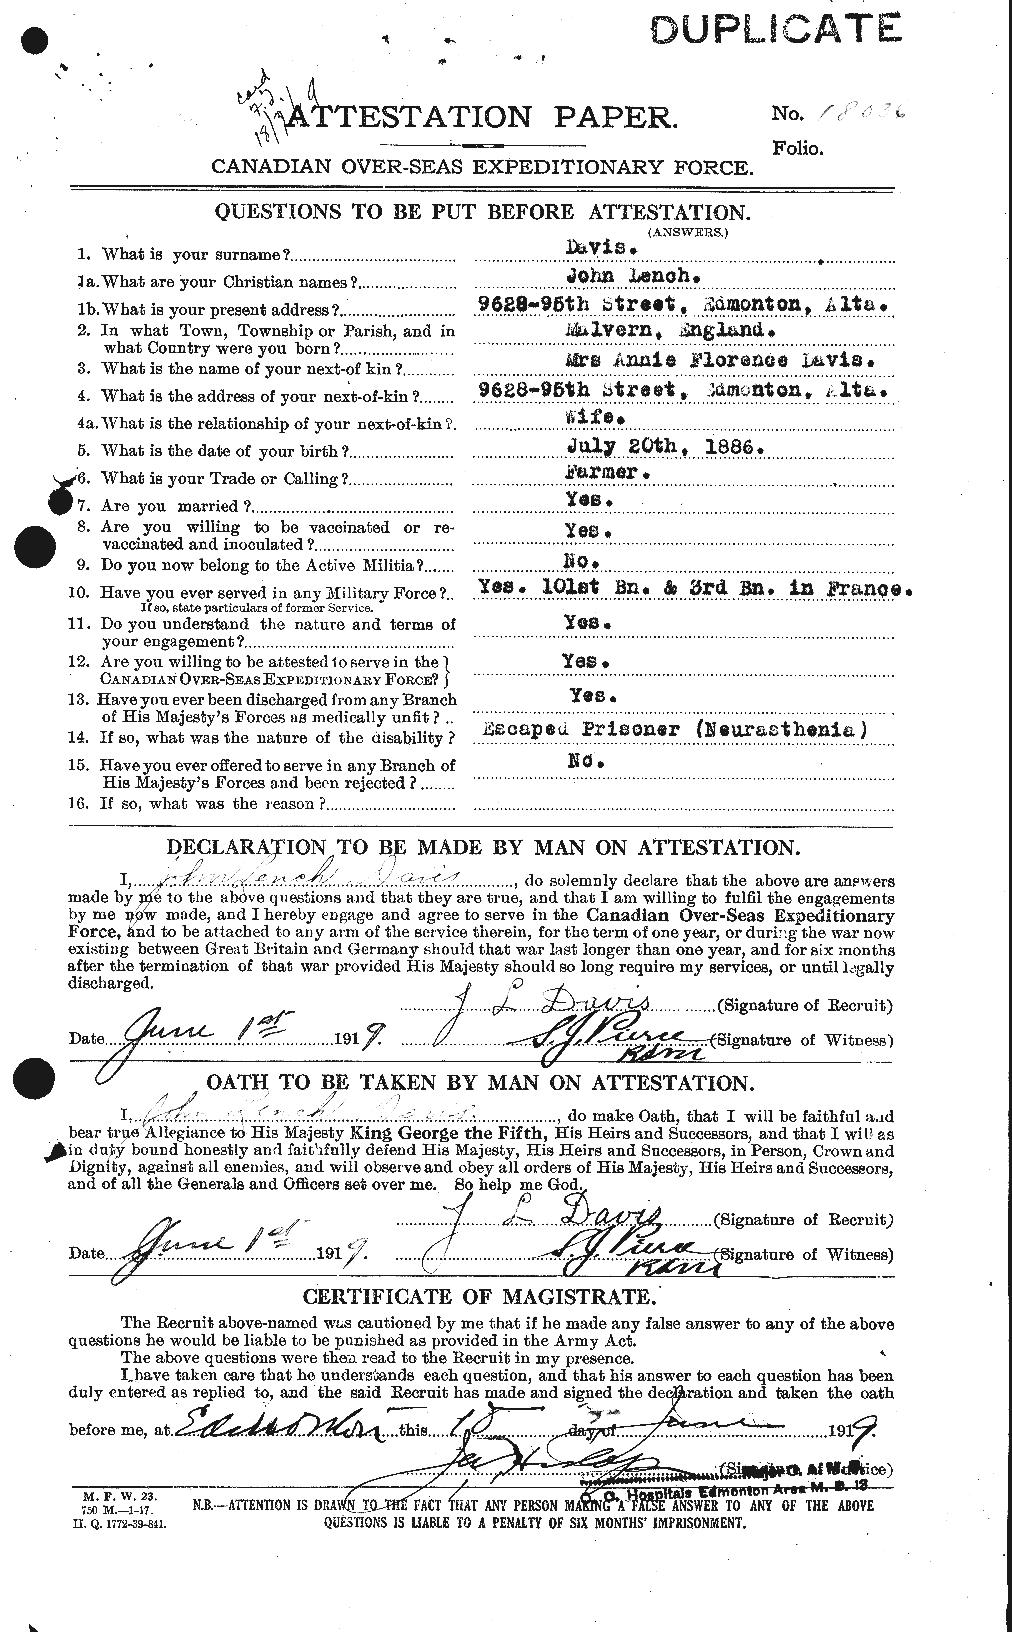 Dossiers du Personnel de la Première Guerre mondiale - CEC 284090a